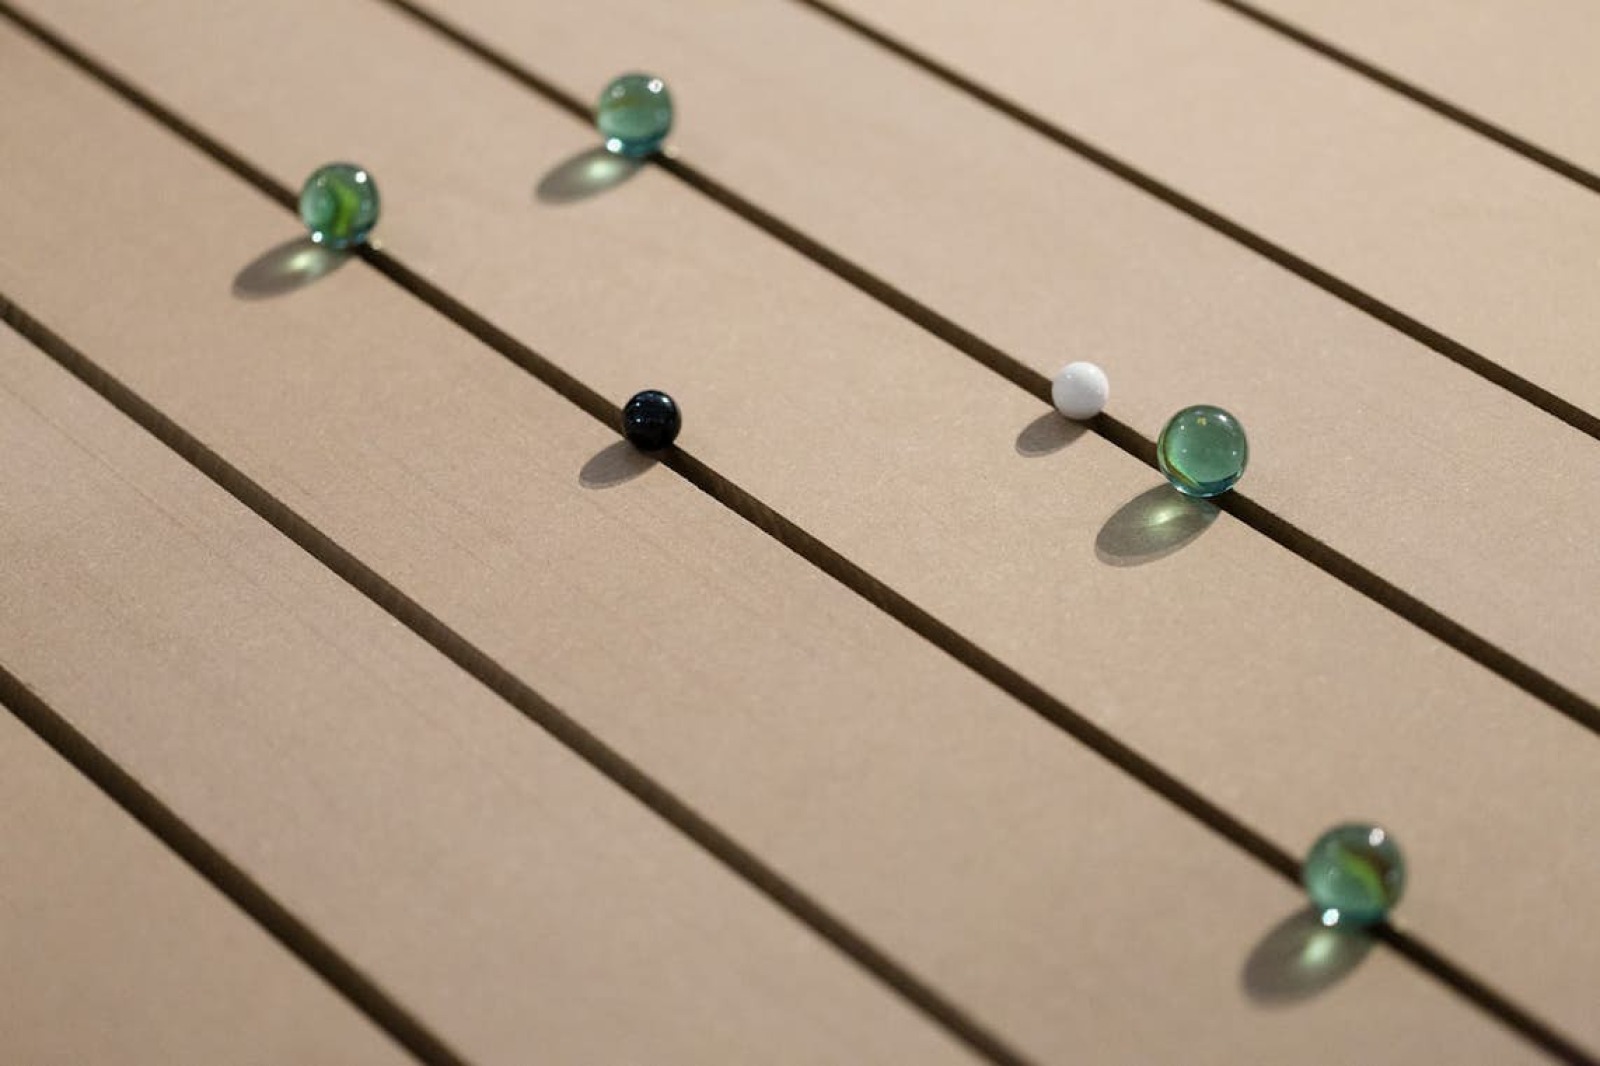 Fotografía de unas bolas de cristal colocadas sobre un suelo de madera.